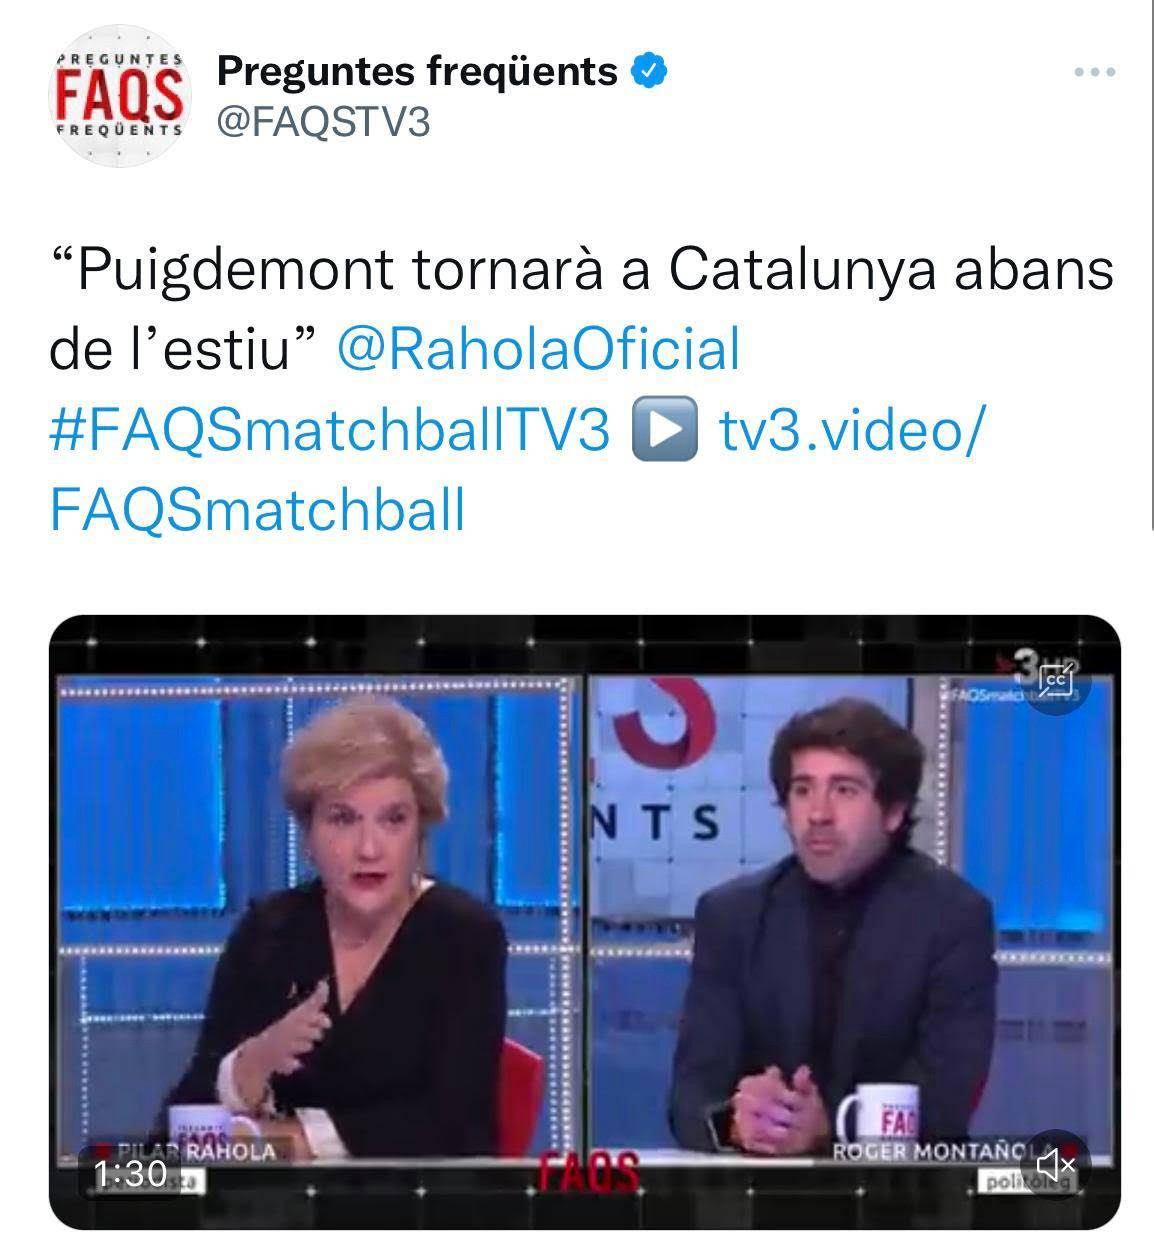 Pilar Rahola afirmó en 'FAQS' que Puigdemont regresaría antes del verano